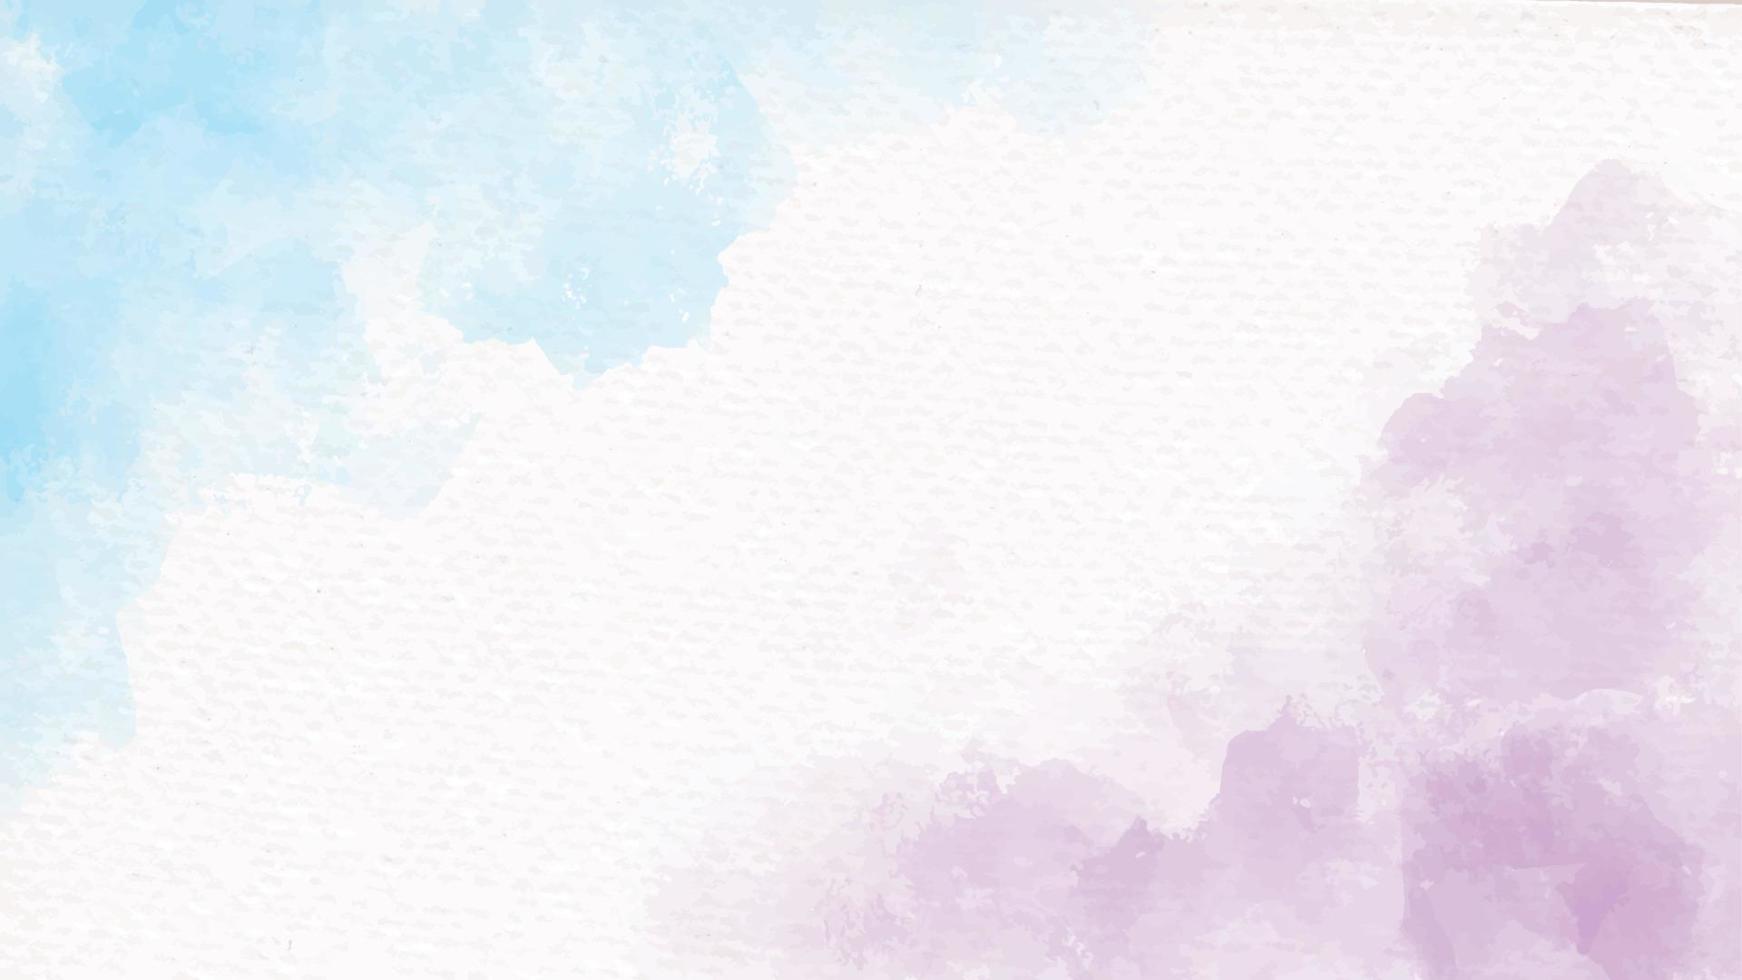 Arco iris azul y violeta unicornio pastel acuarela femenina sobre papel fondo abstracto vector